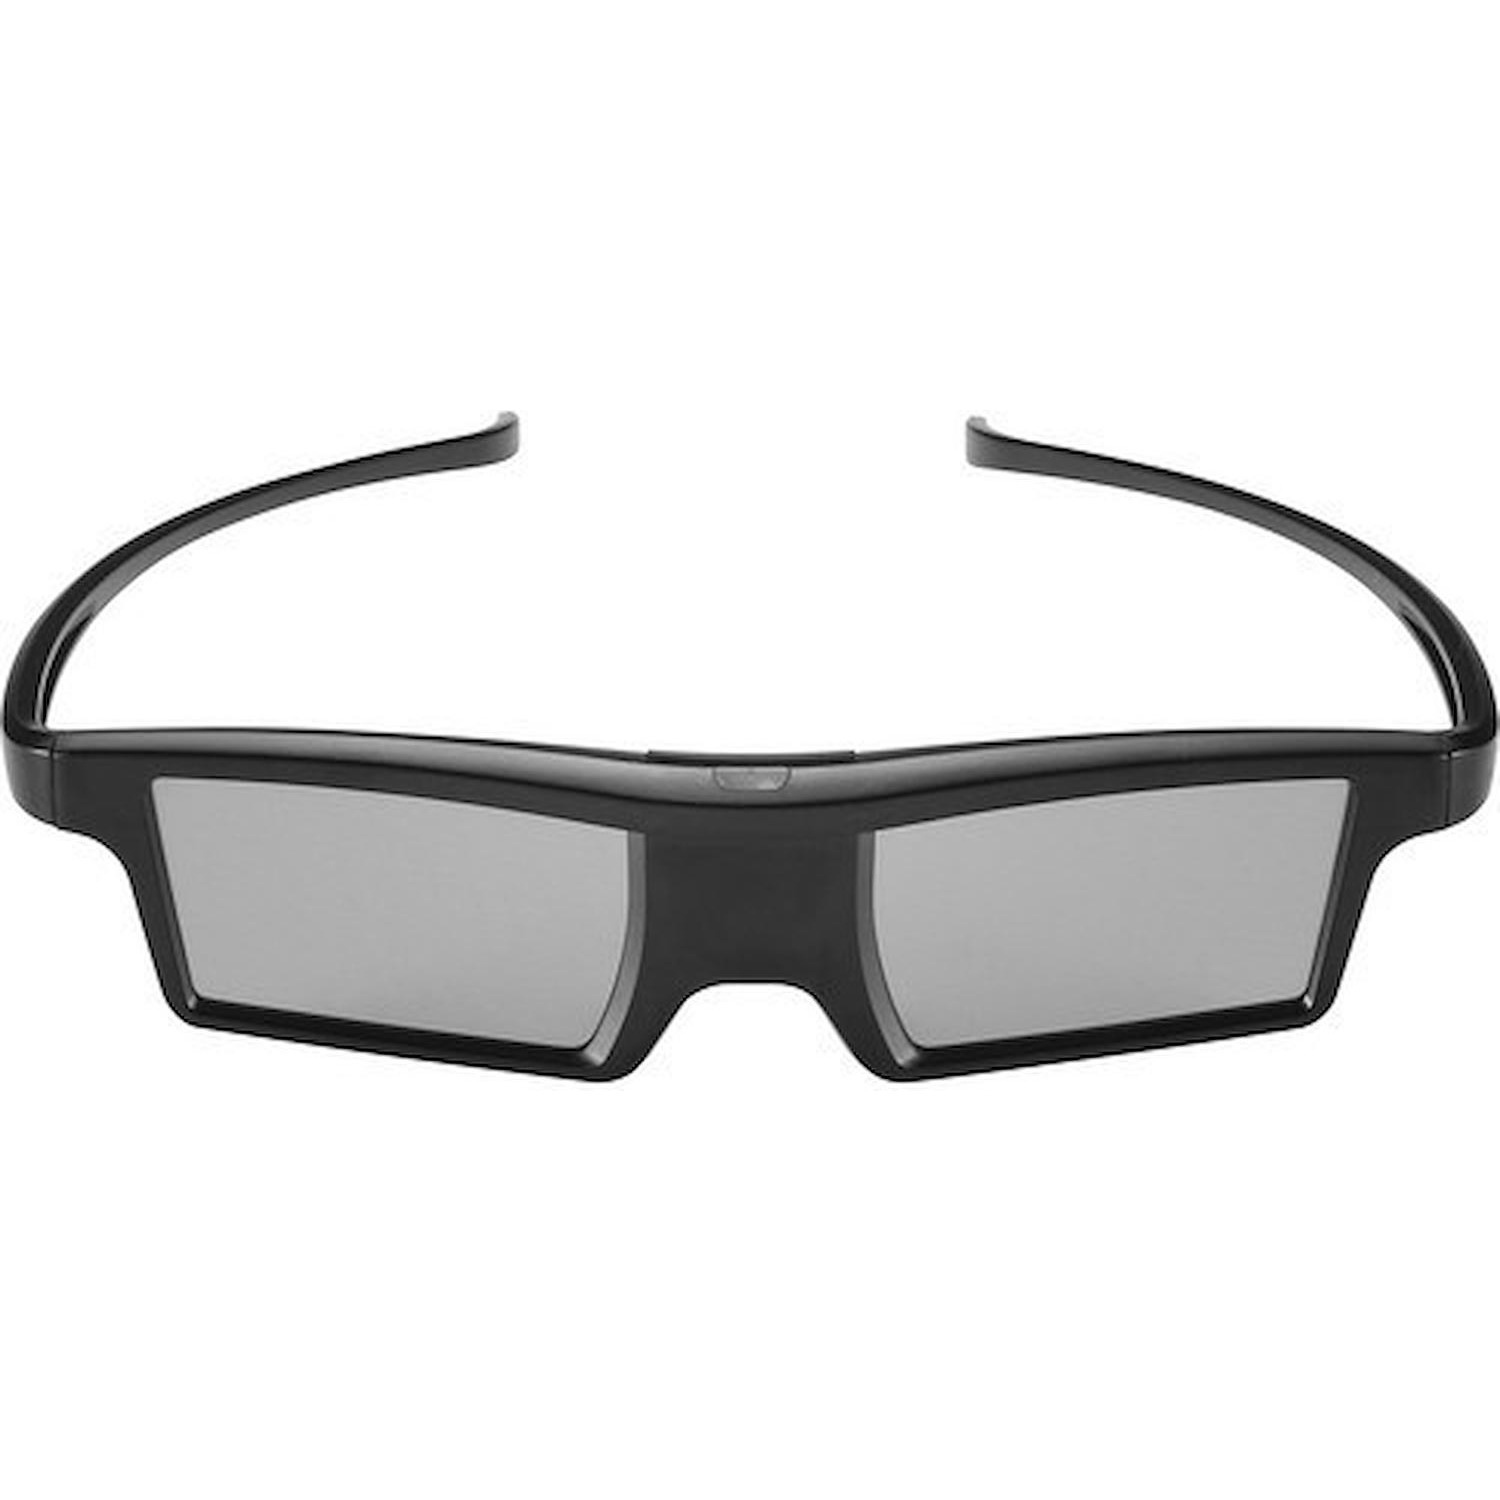 Immagine per Occhiali LG 3D Active AGS360 da DIMOStore